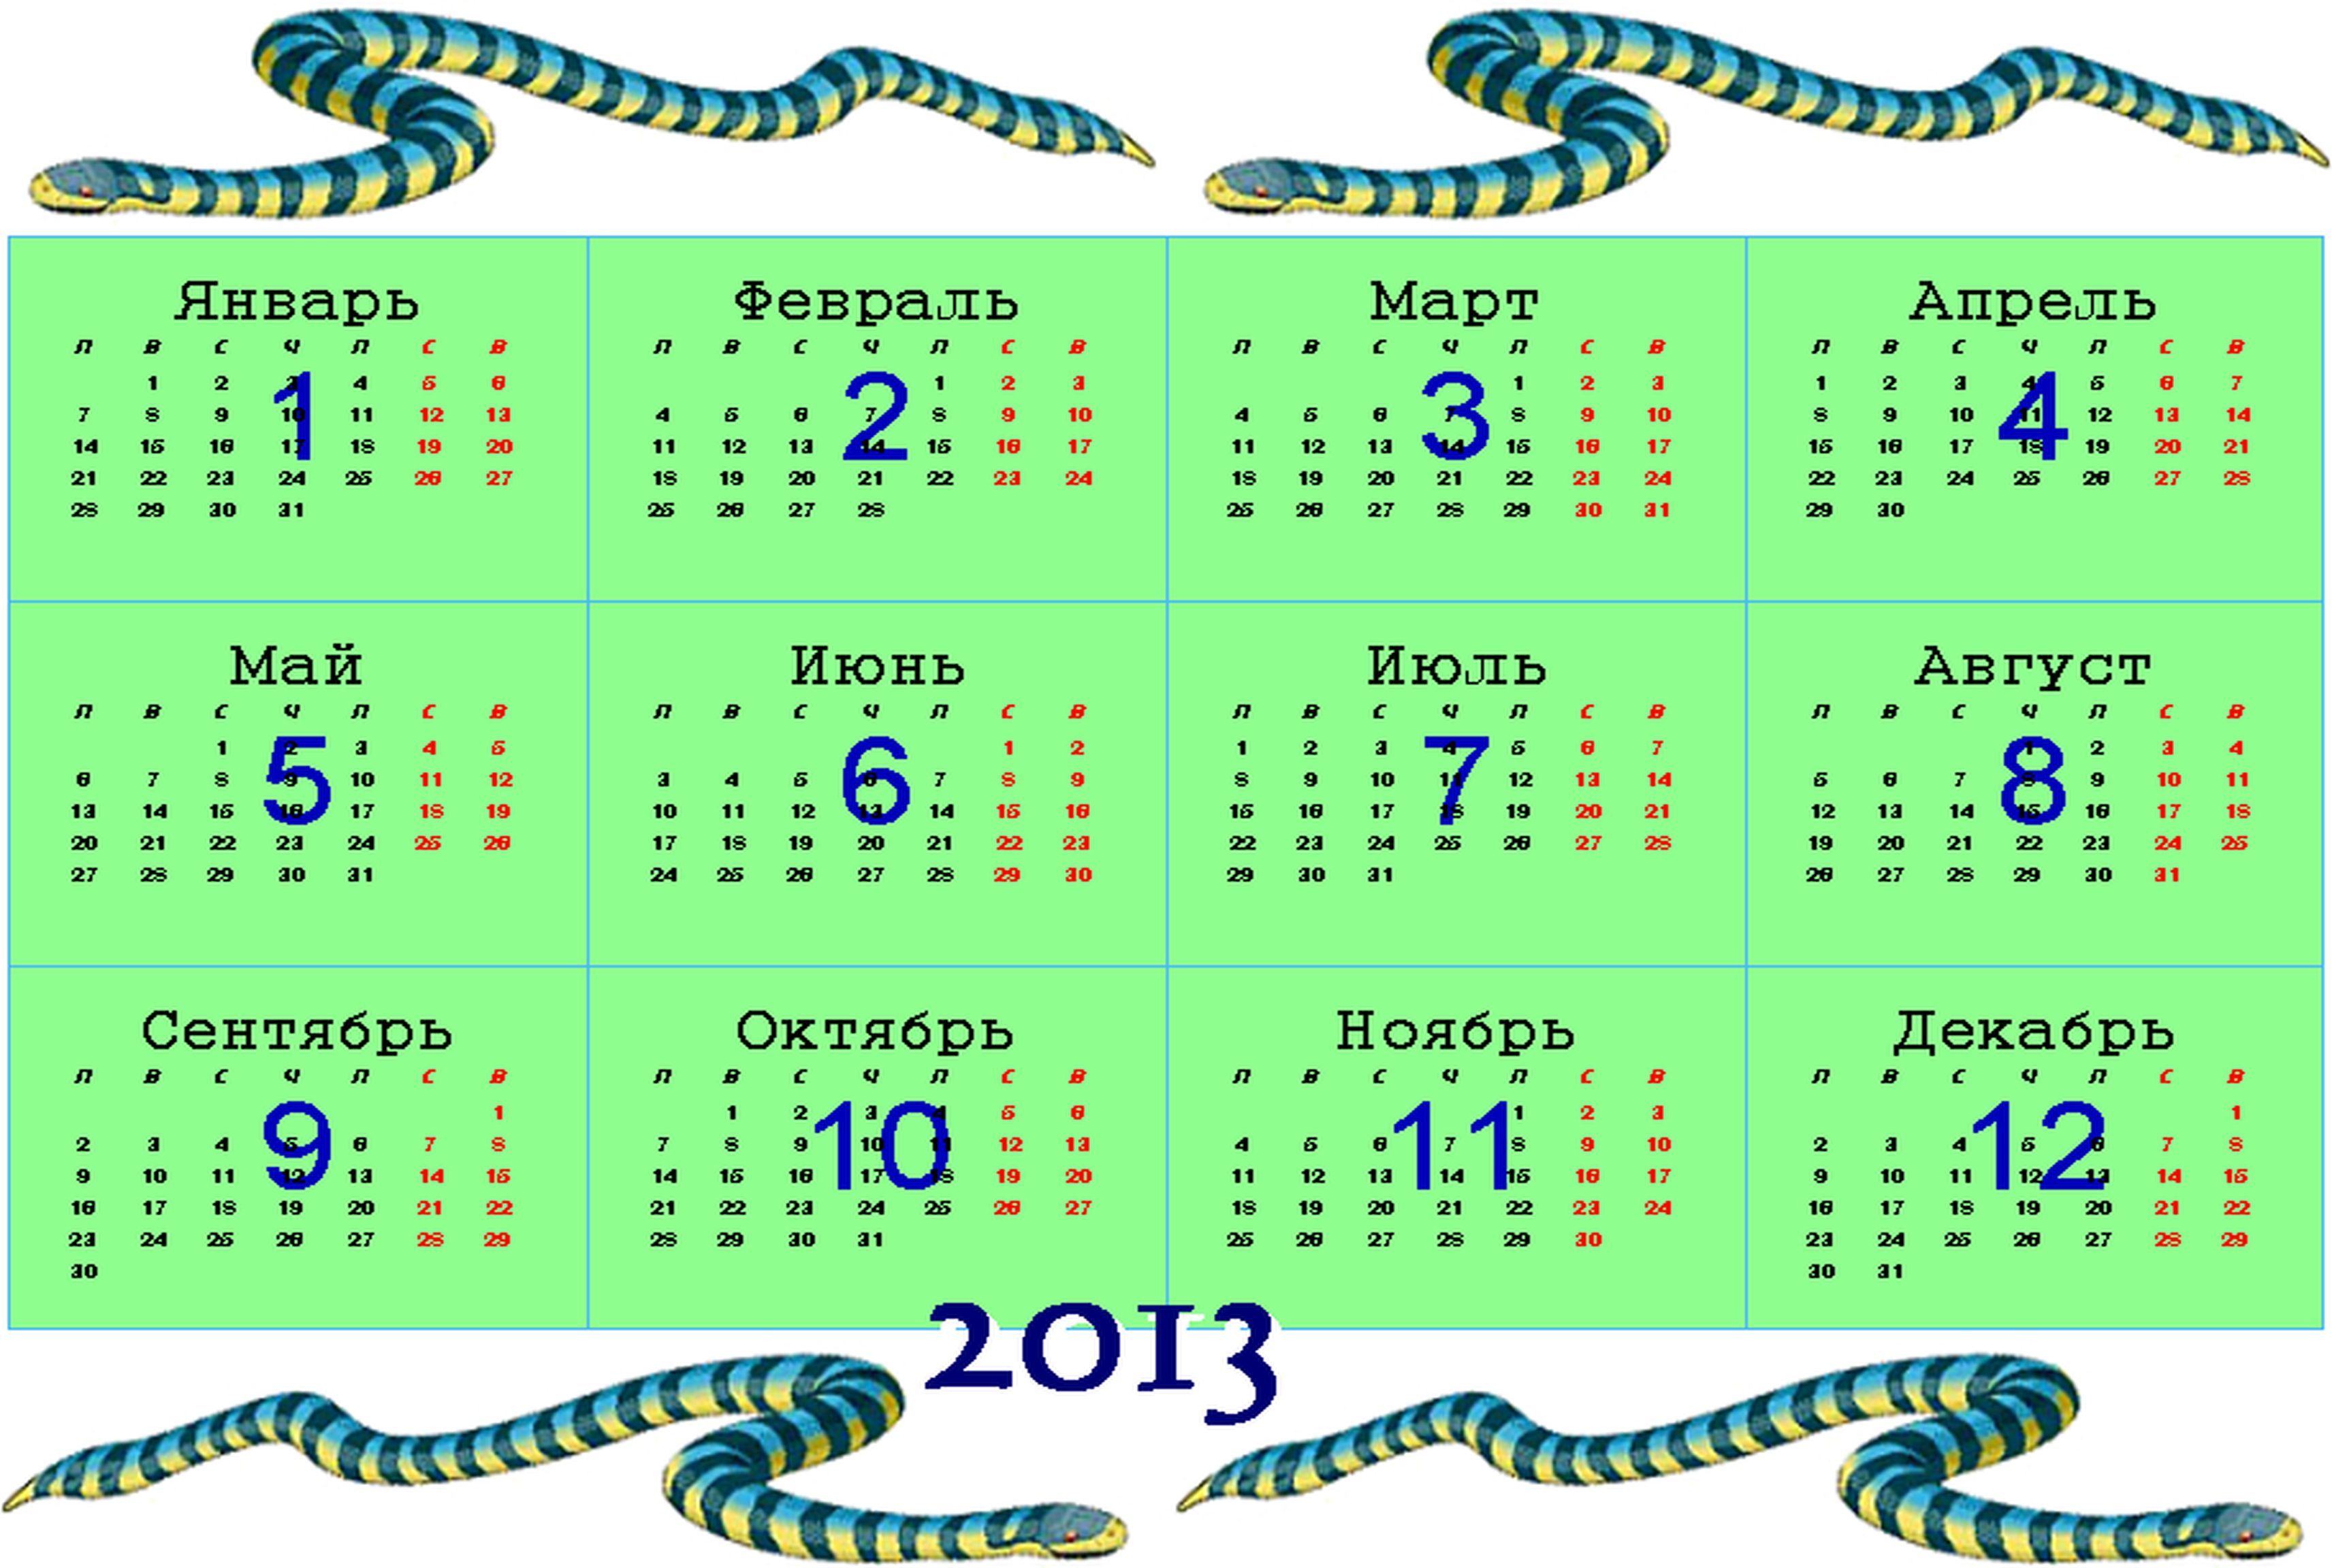 Следующий год змеи. Календарь 2013 год змеи. Год водяной змеи. Календарь змеи. Год водяной змеи 2013.